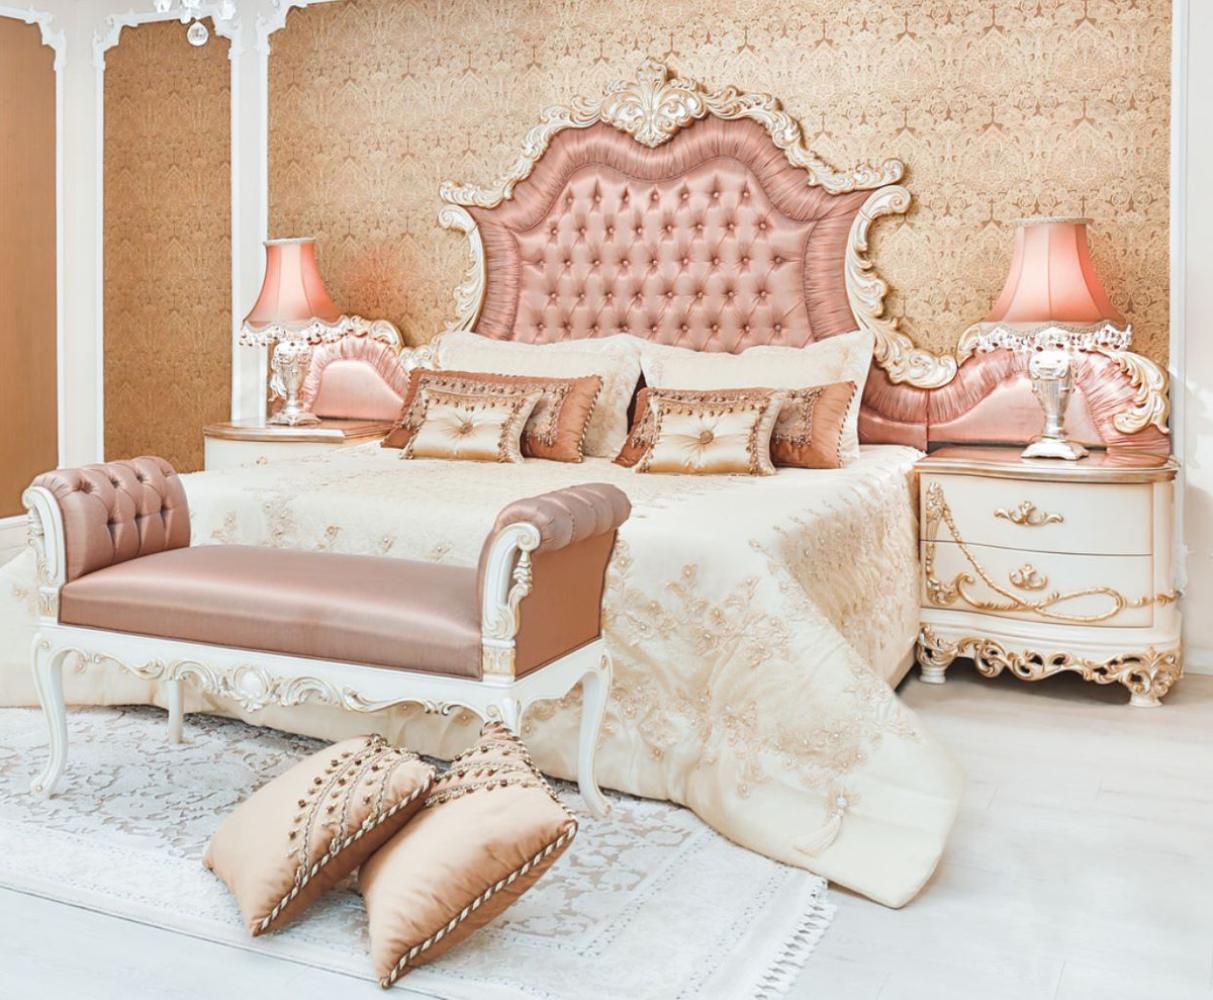 Casa Padrino Luxus Barock Schlafzimmer Set Rosa / Weiß / Creme / Kupferfarben - 1 Doppelbett mit Kopfteil & 2 Nachttische & 1 Sitzbank - Barock Schlafzimmer Möbel - Edel & Prunkvoll Bild 1